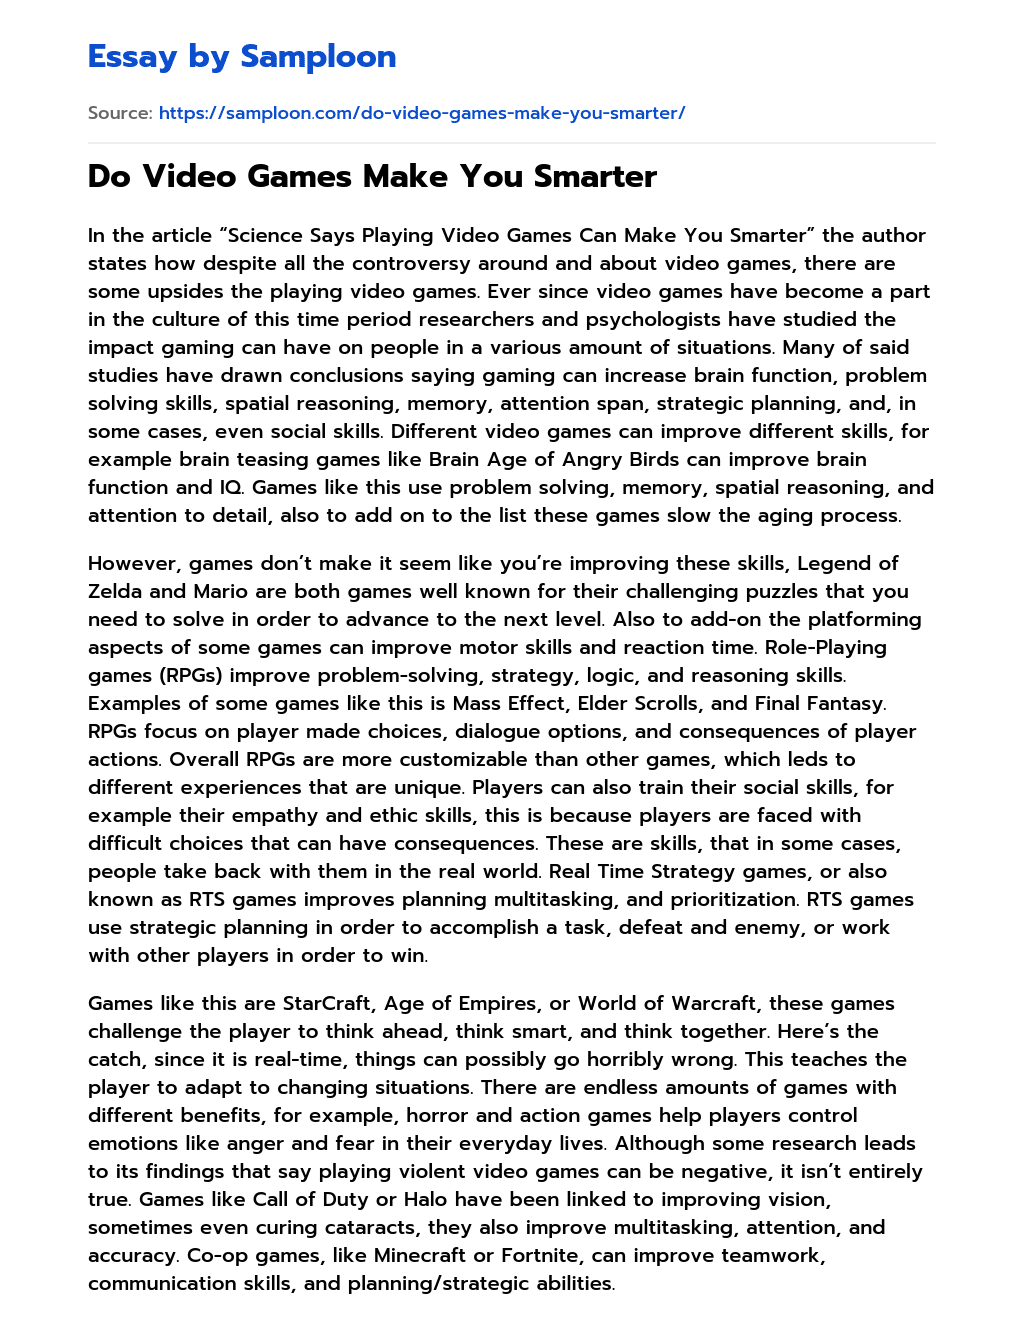 Do Video Games Make You Smarter essay